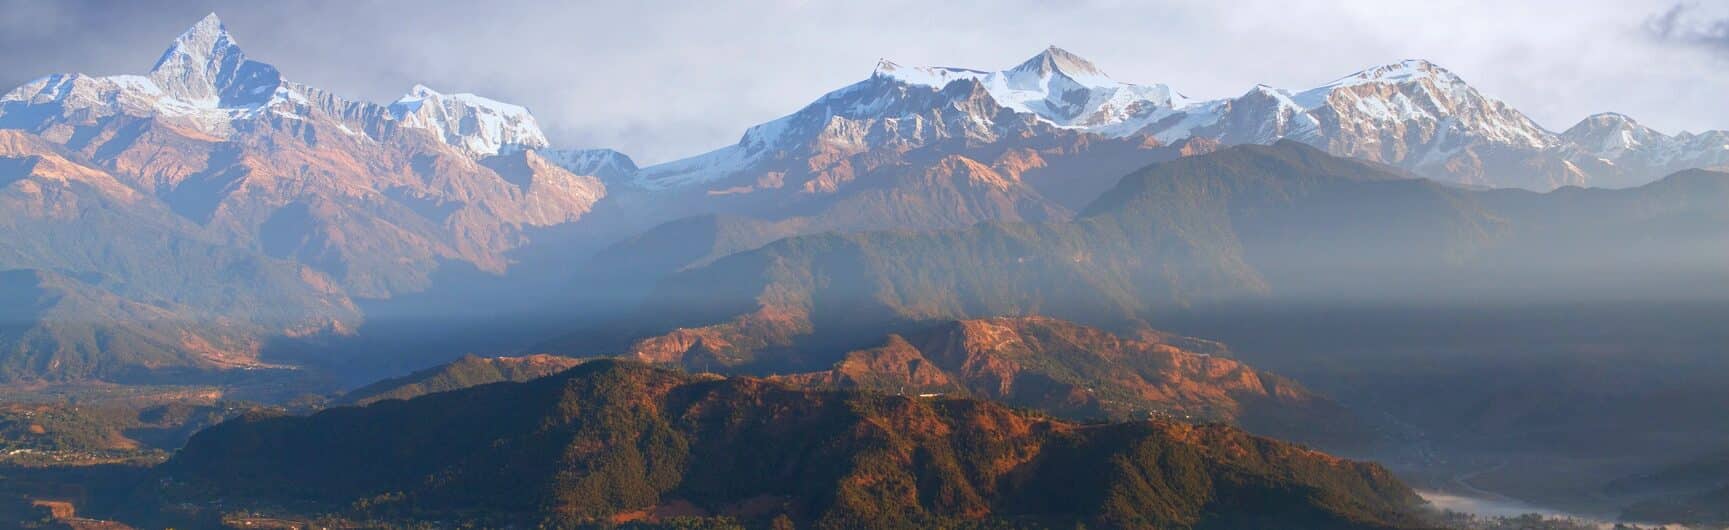 Nepal, Pokhara